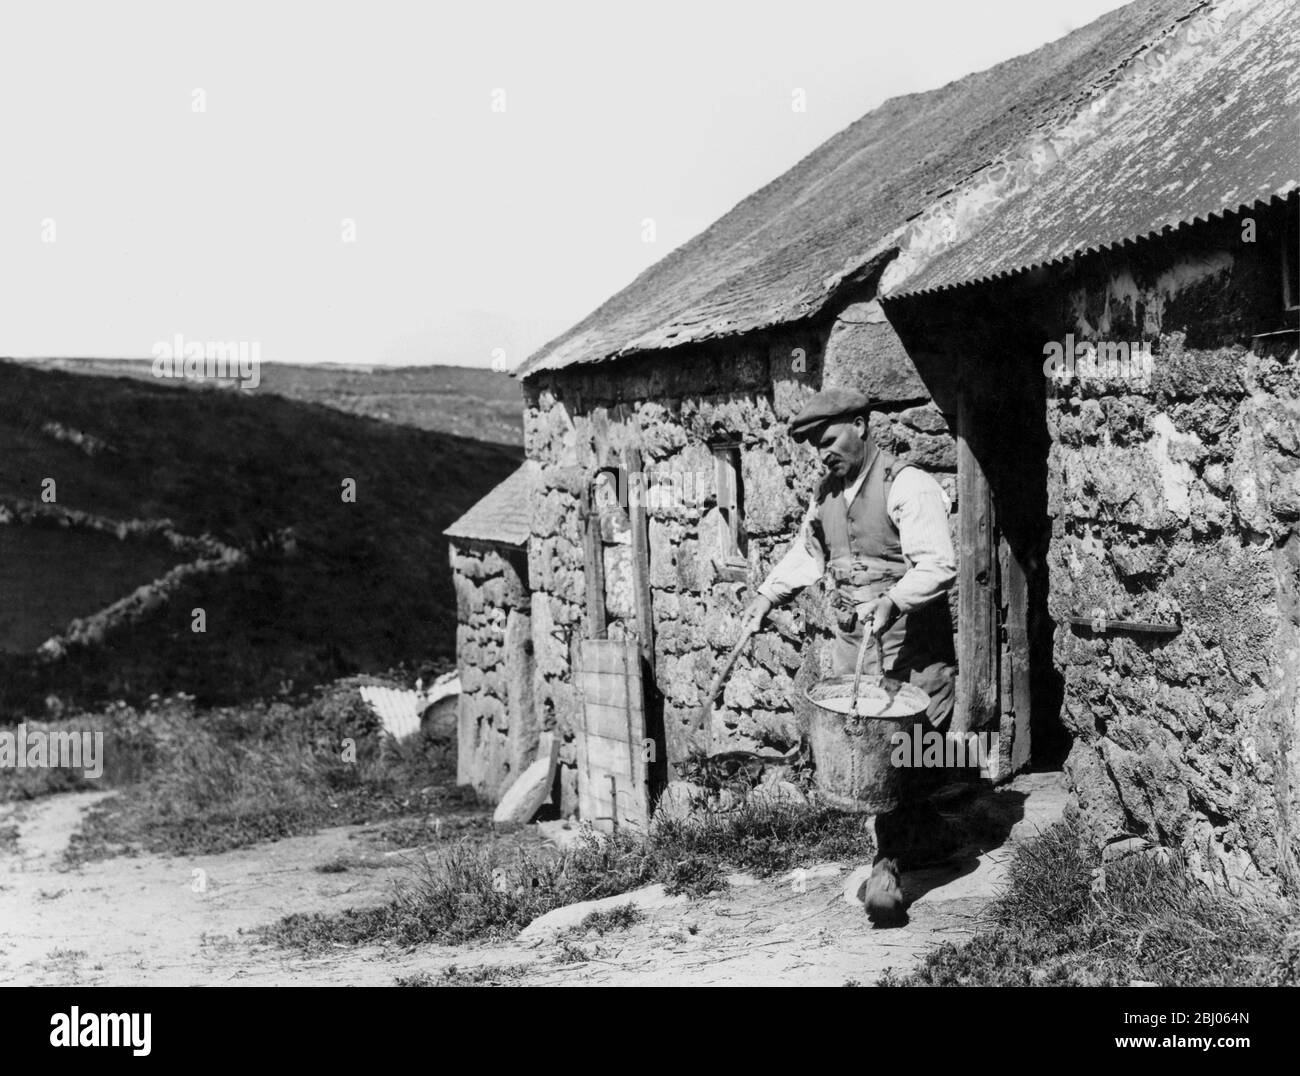 Un agricultor de la colina que sacaba un cubo de sarva de cerdo, Cornwall 1936. - los años treinta fueron un mal momento para la cultura agrícola inglesa; muchos escritores comentaron sobre el edificio de Tumbledown y campos abandonados, infestados de malezas. Foto de stock